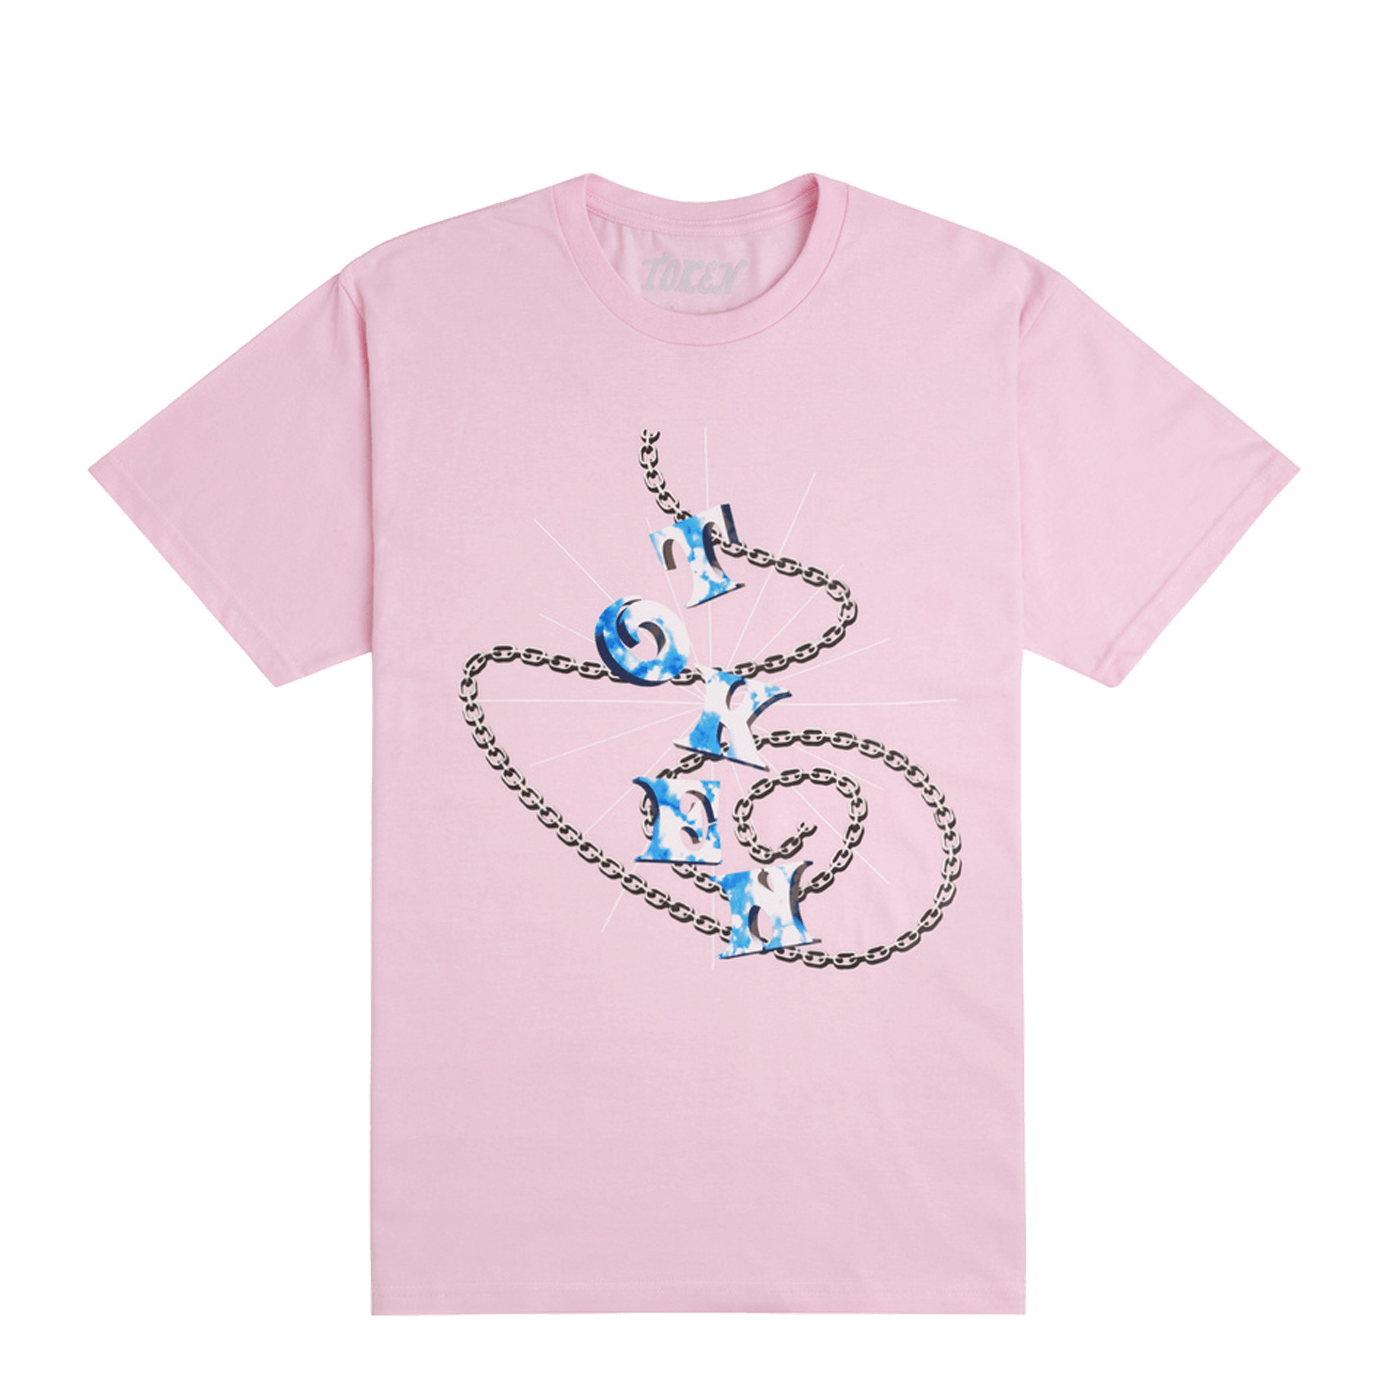 Token Chain T-Shirt Light Pink